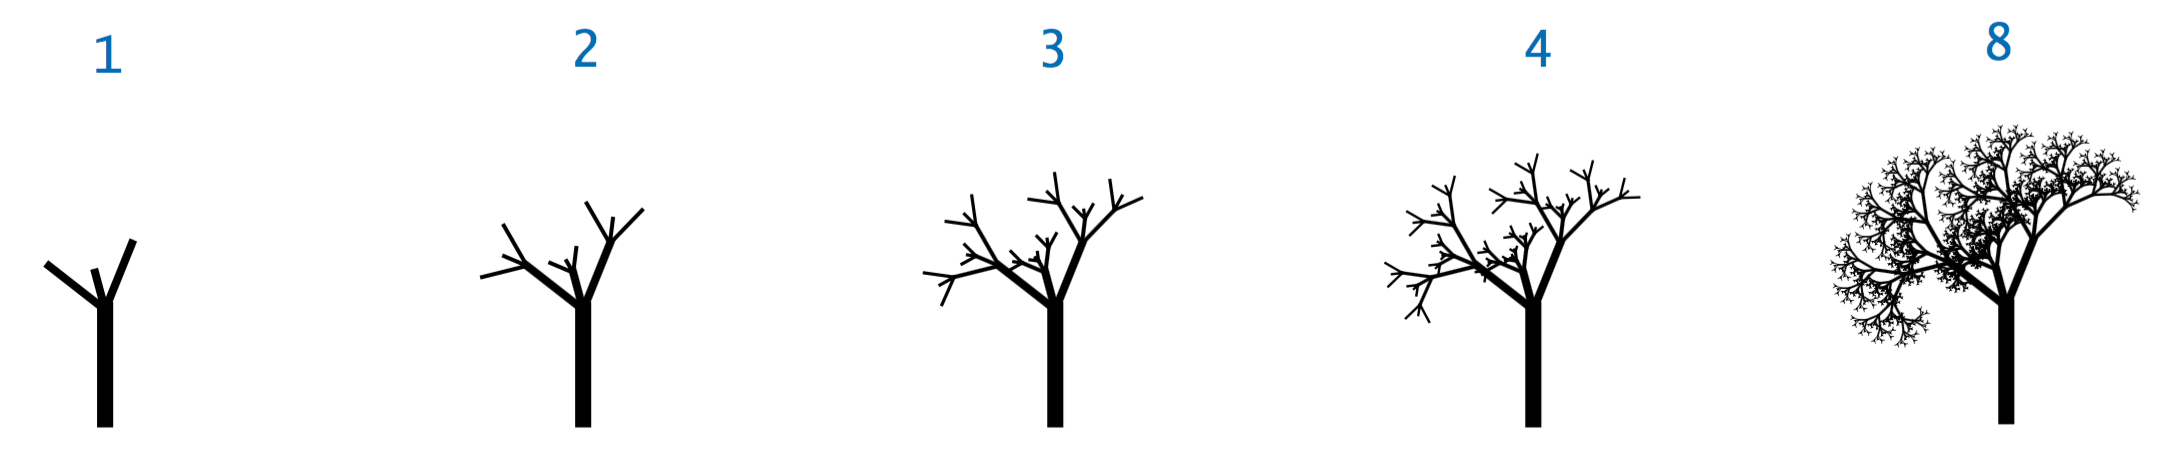 recursive tree